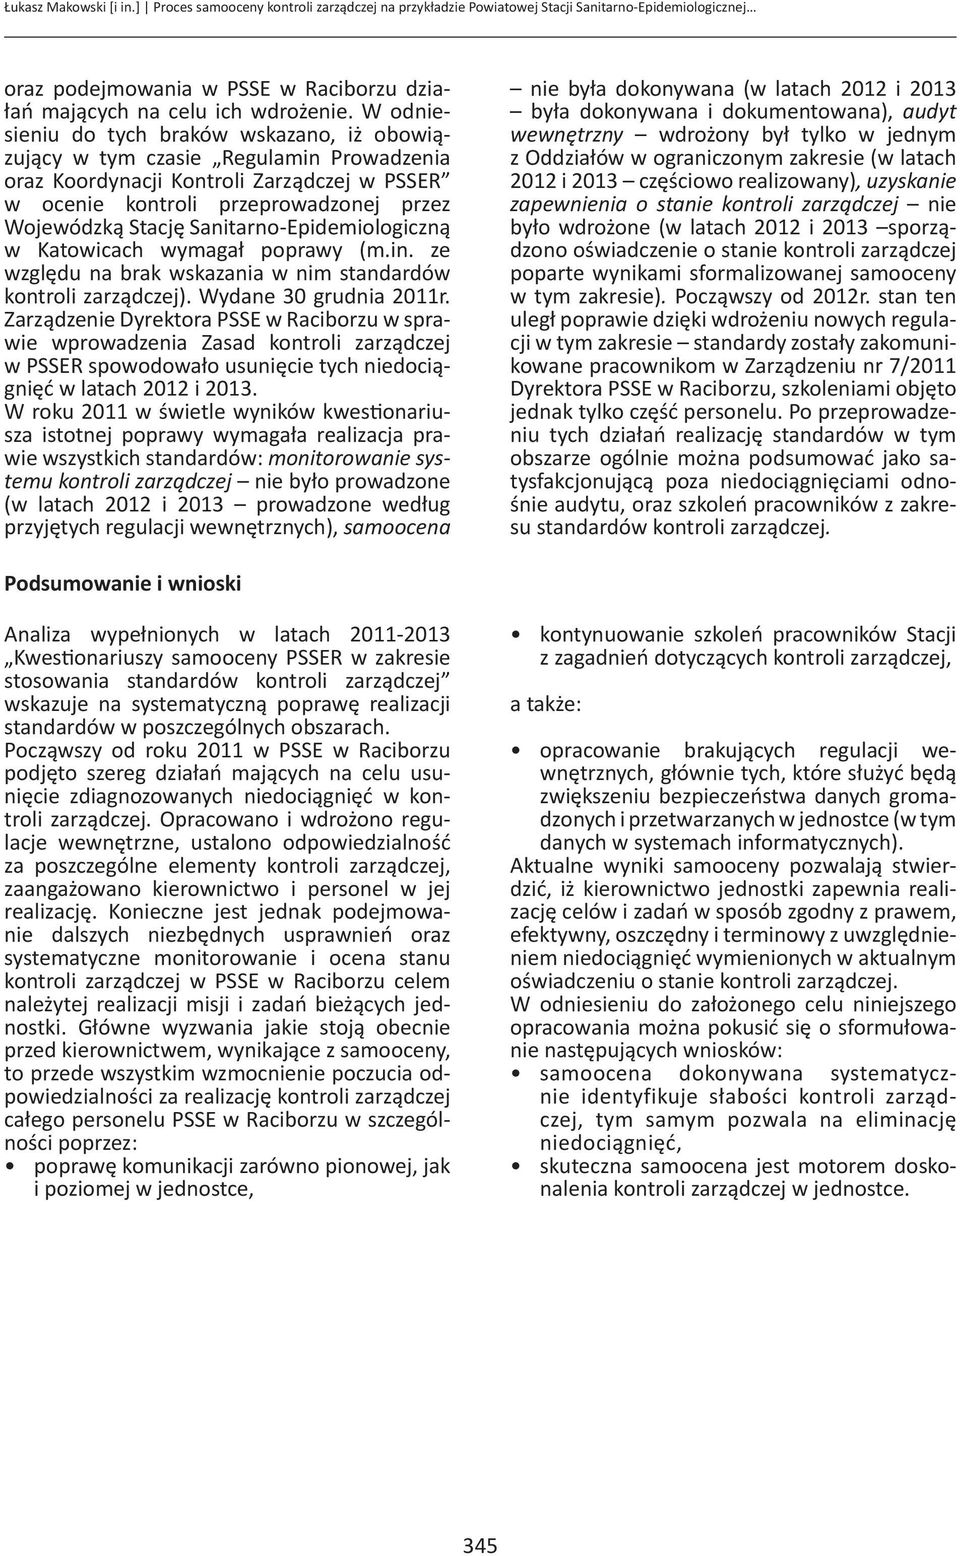 Sanitarno-Epidemiologiczną w Katowicach wymagał poprawy (m.in. ze względu na brak wskazania w nim standardów kontroli zarządczej). Wydane 3 grudnia 211r.